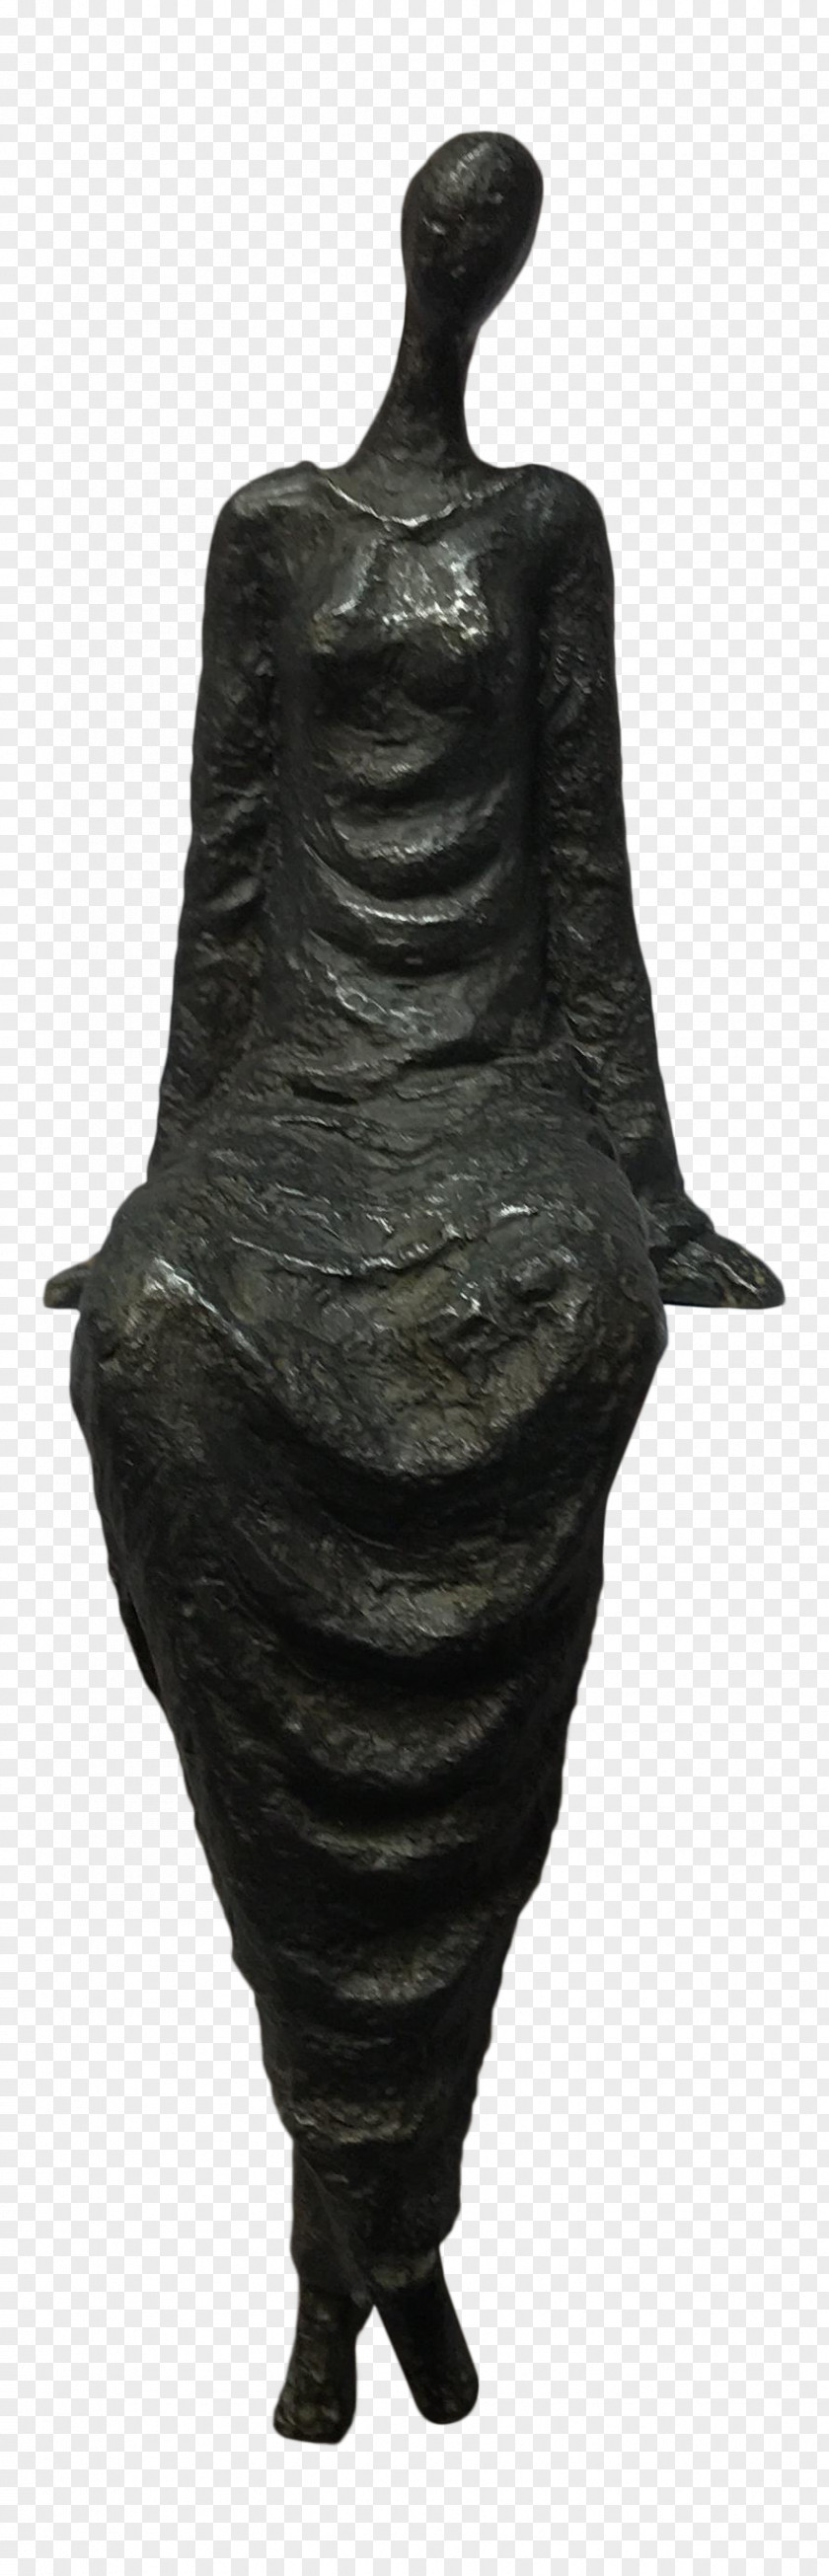 Bronze Sculpture Classical PNG